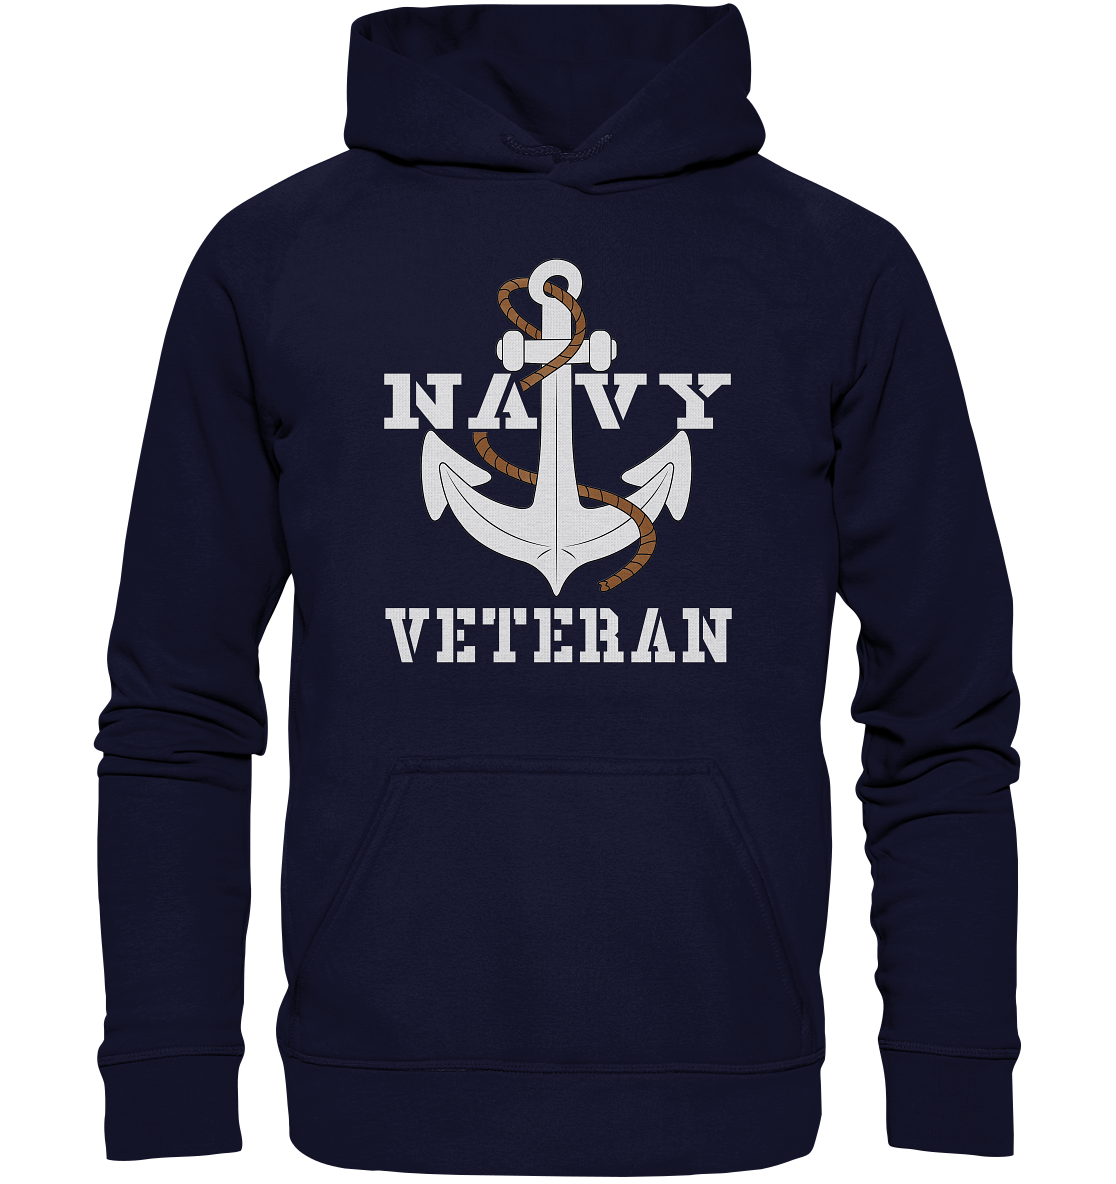 Navy Veteran Anker - Basic Unisex Hoodie